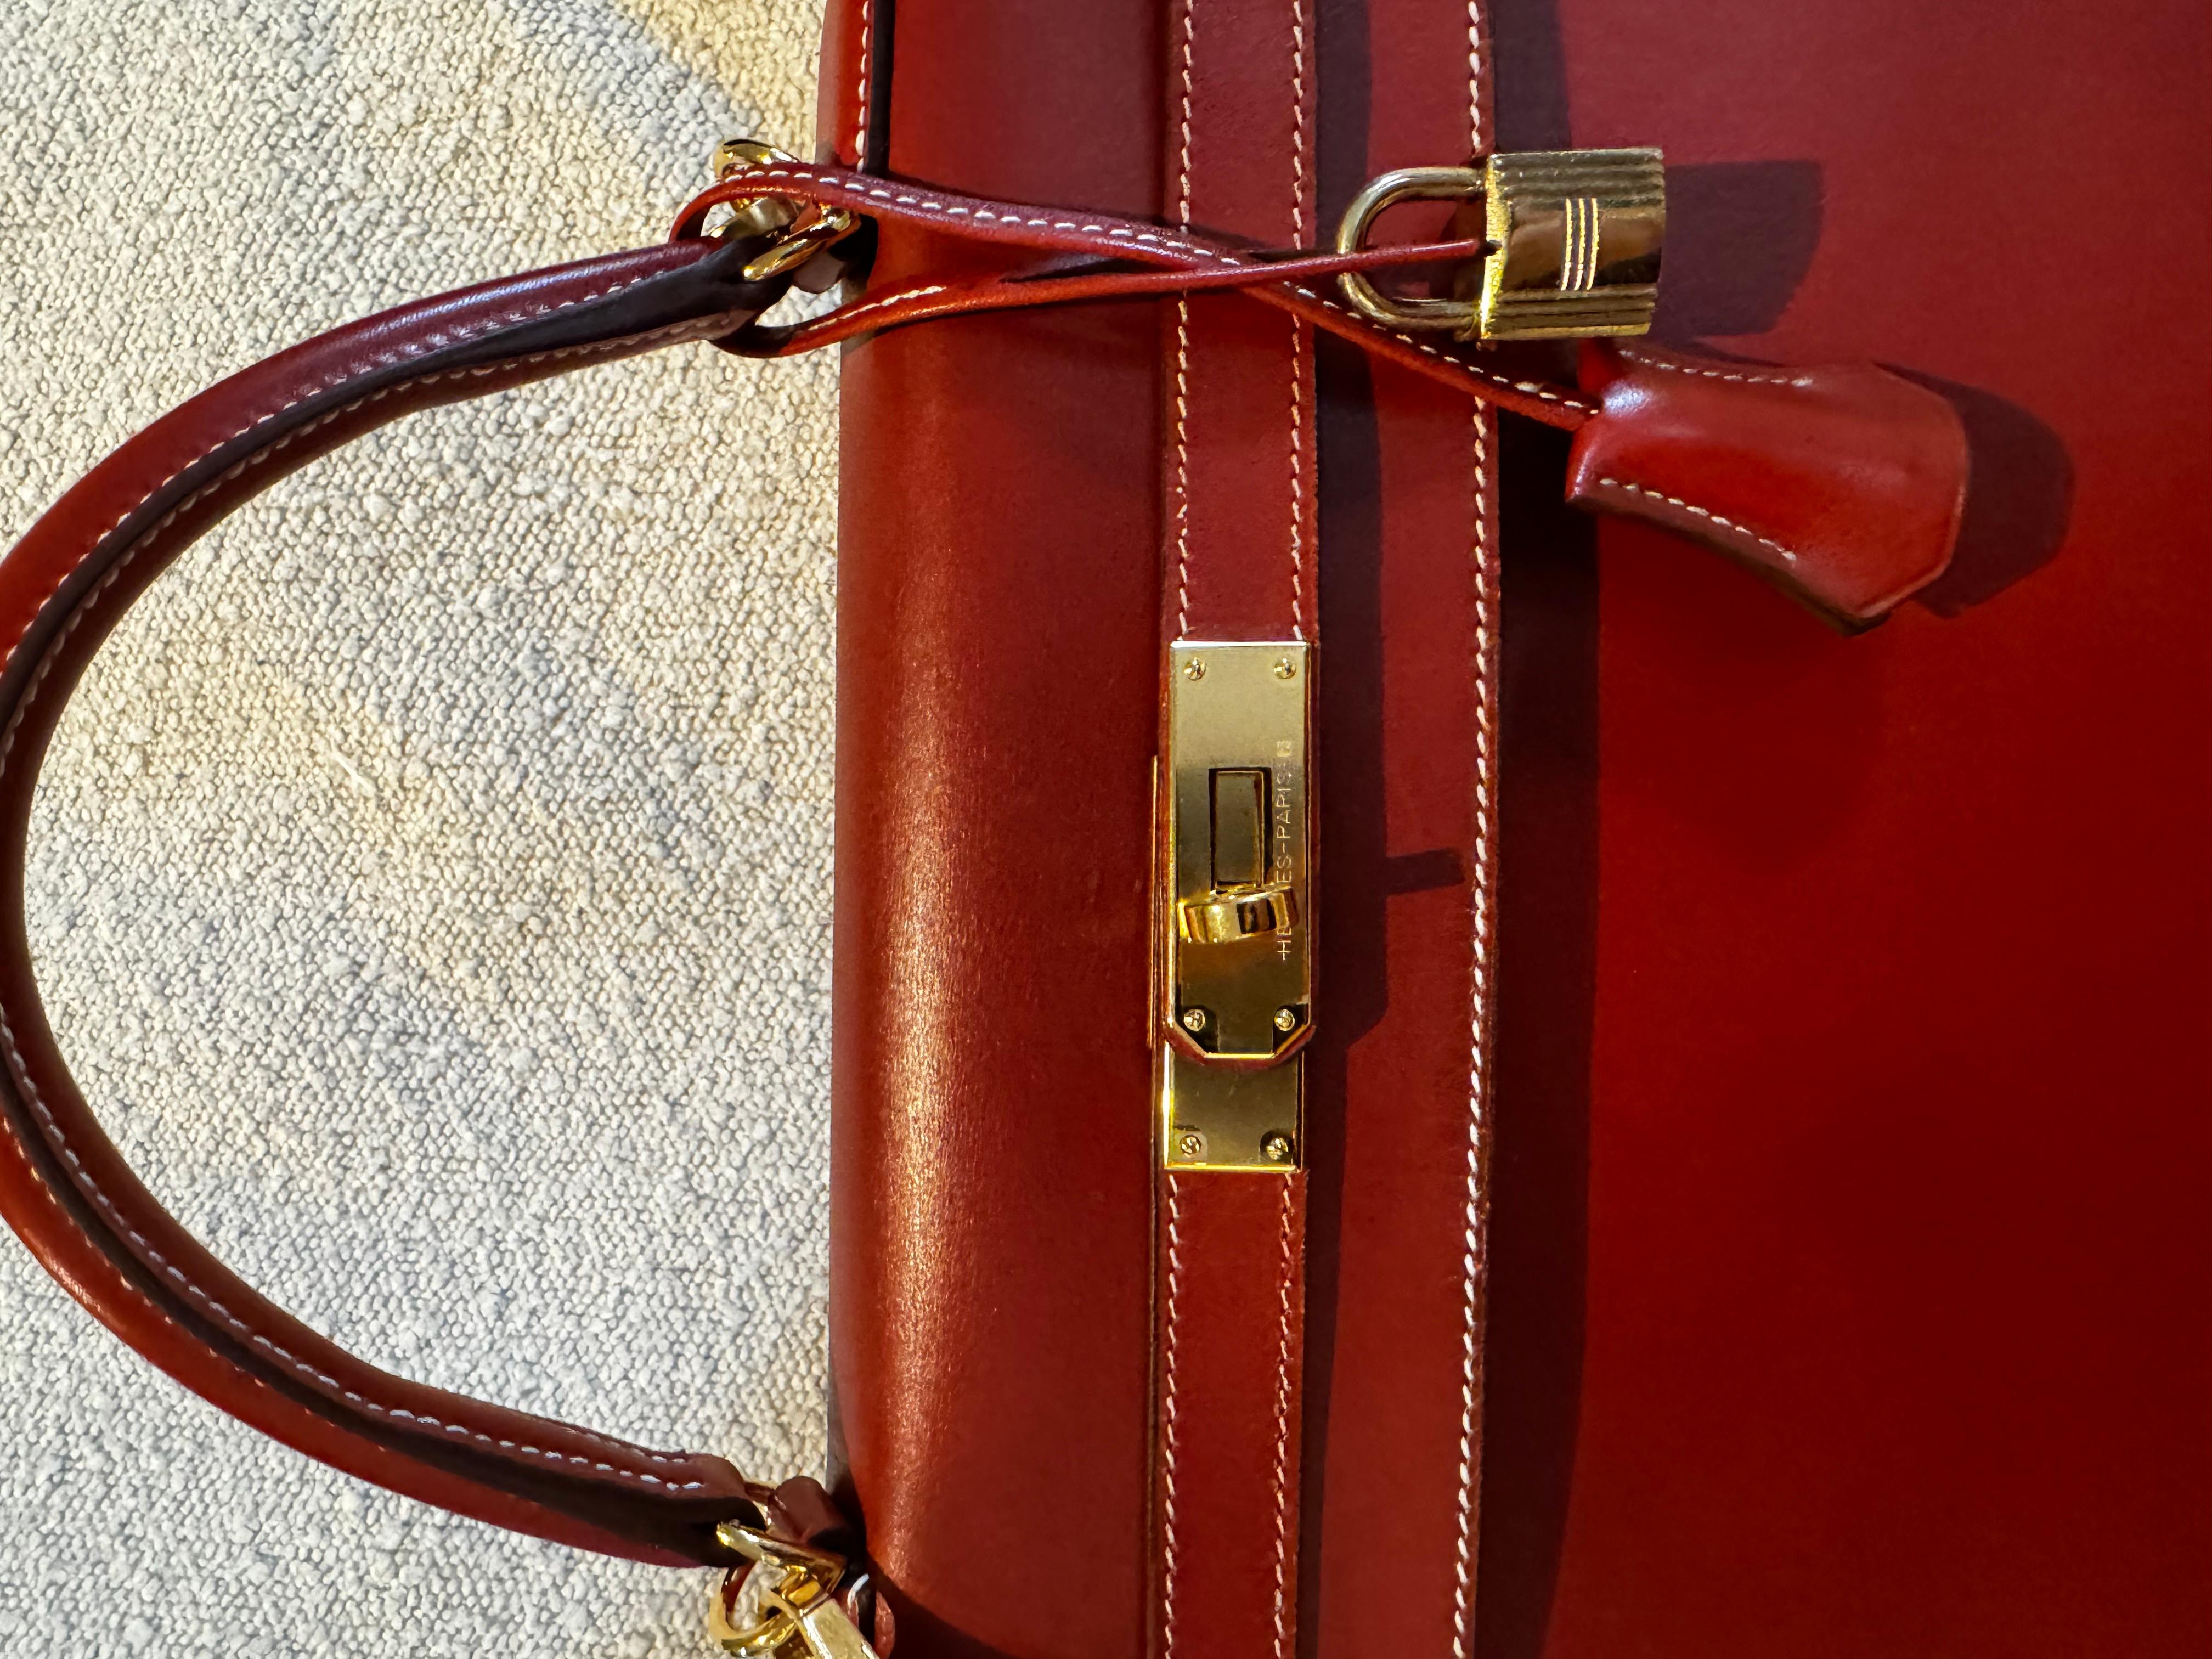 Hermes Kelly 32 sellier vintage in burgunderfarbenem Boxleder mit goldener Hardware. Kürzlich neu aufgelegte Farb- und Lederkombination, sehr beliebt und begehrt. Mit neuen Beschlägen und neuem Griff, gerade aus dem Hermes-Reparaturservice. 
Wird